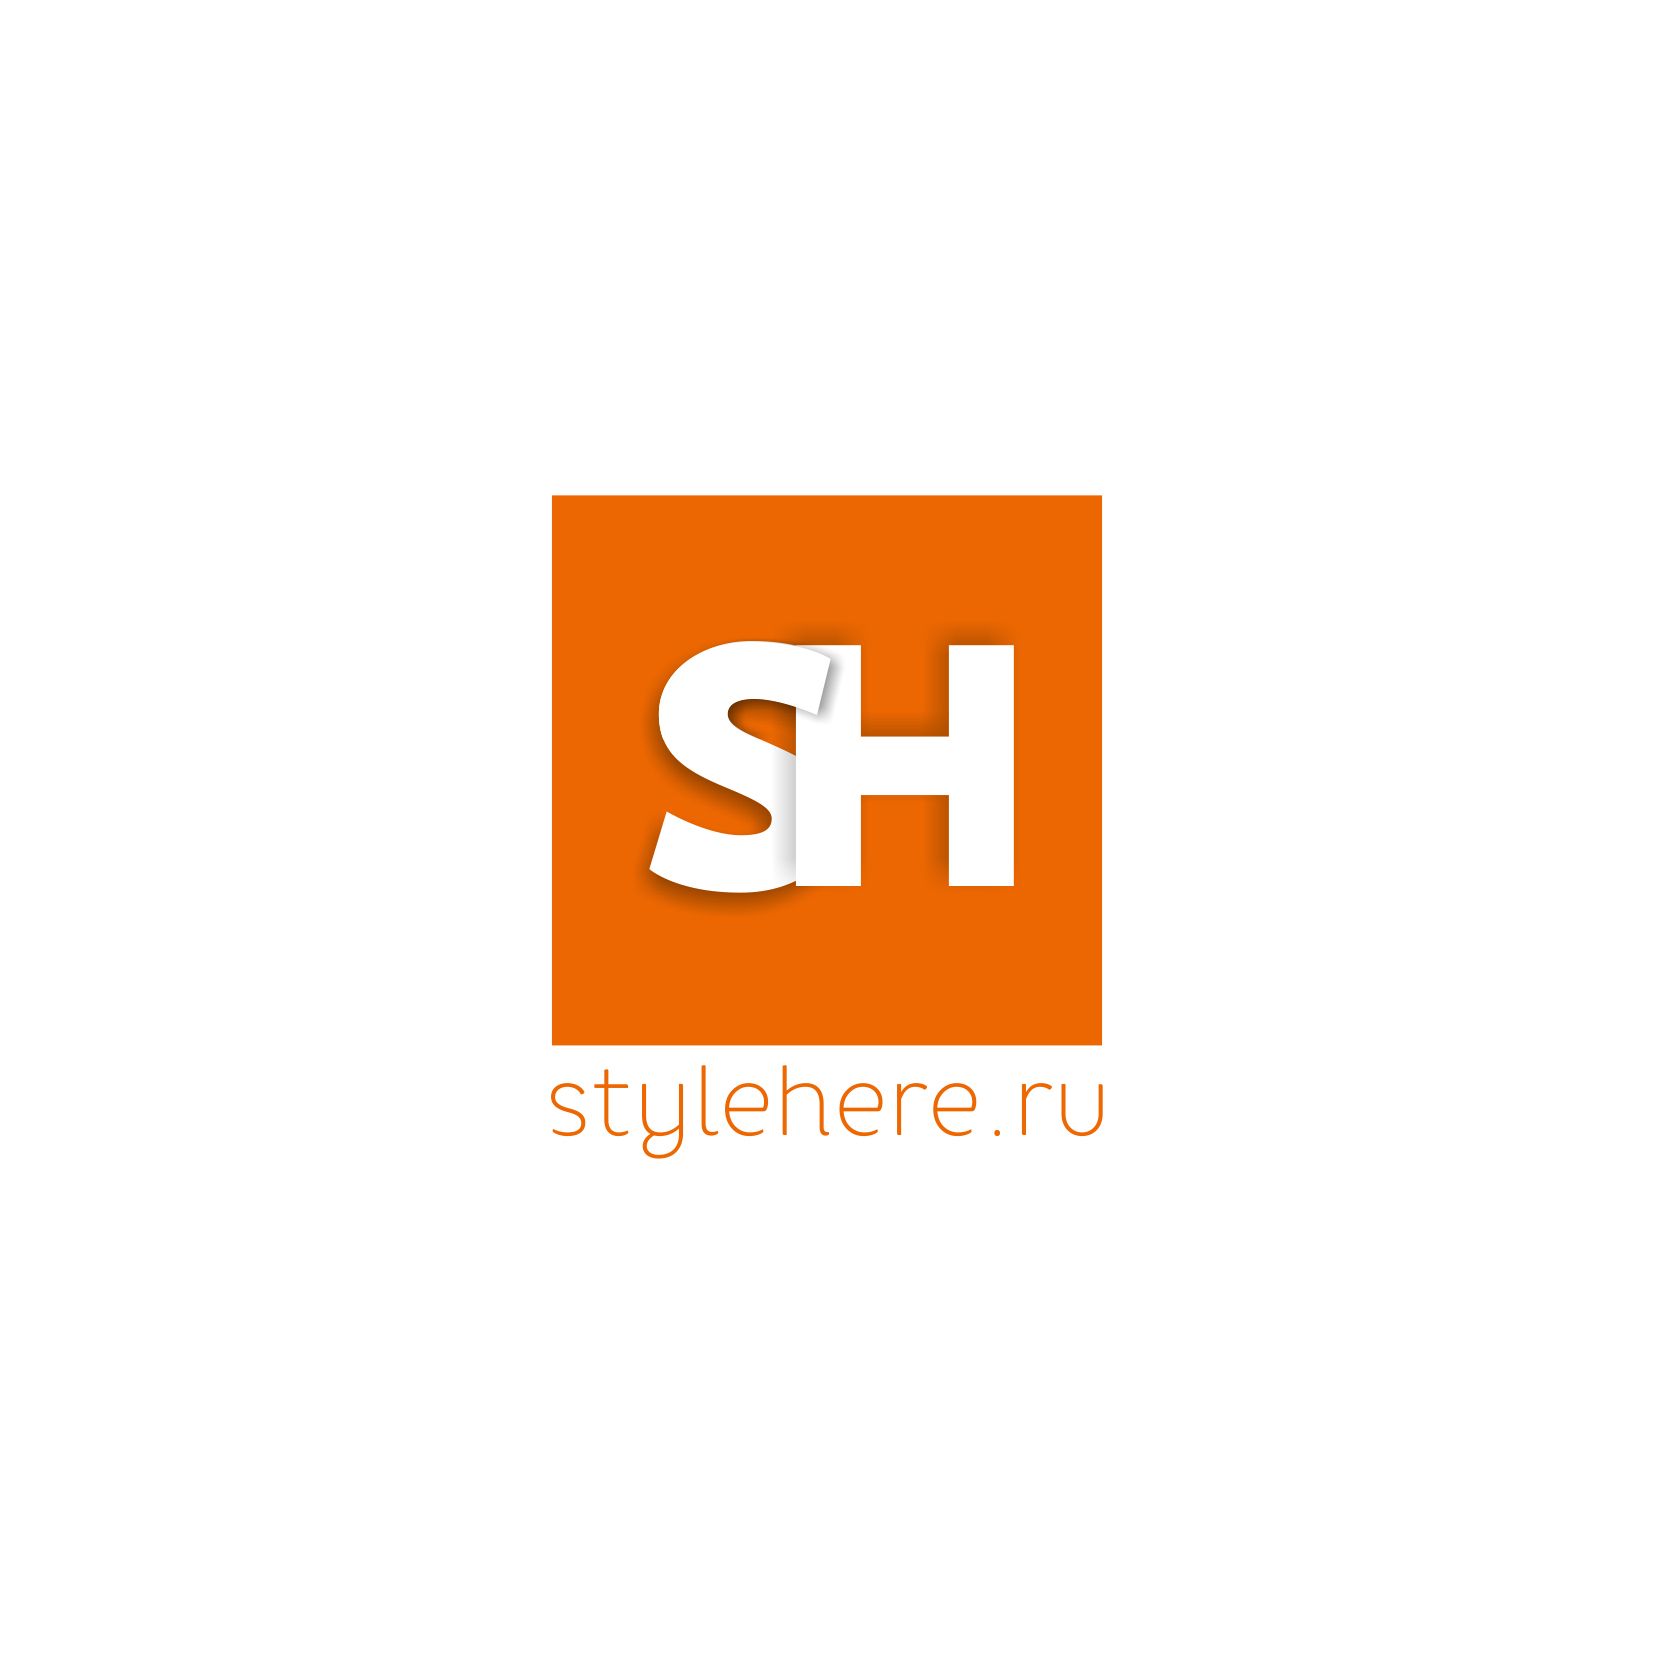 Логотип для интернет-магазина stylehere.ru - дизайнер pionero